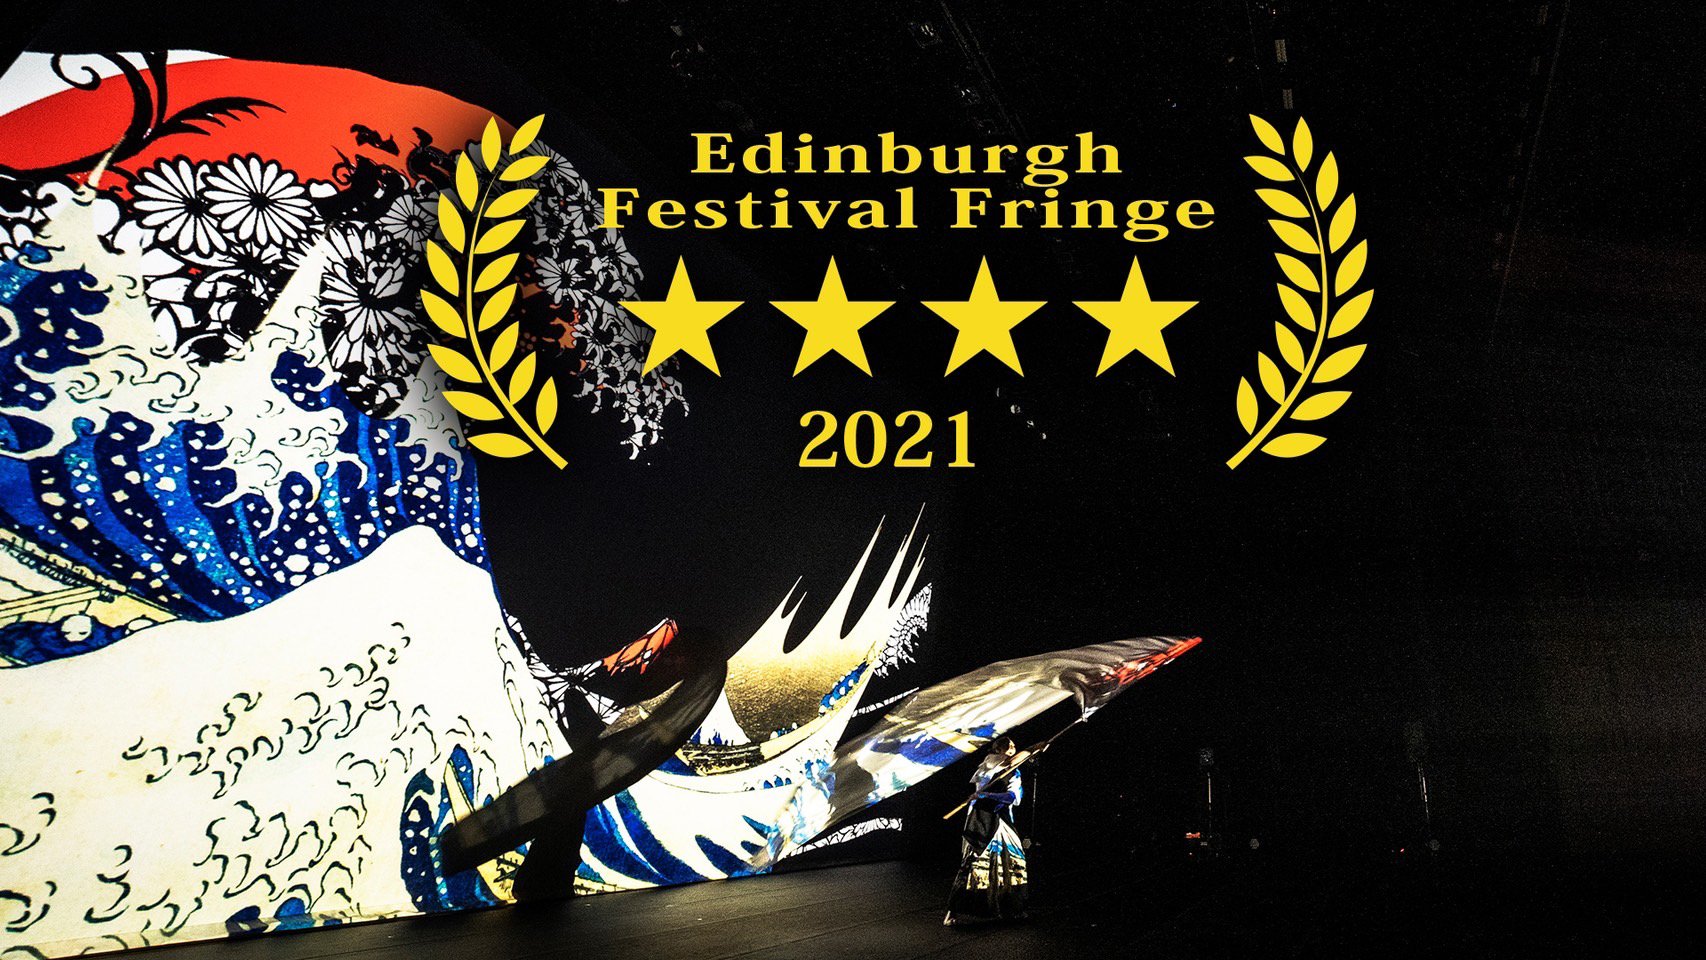 Winner of four stars at Edinburgh Fringe Festival